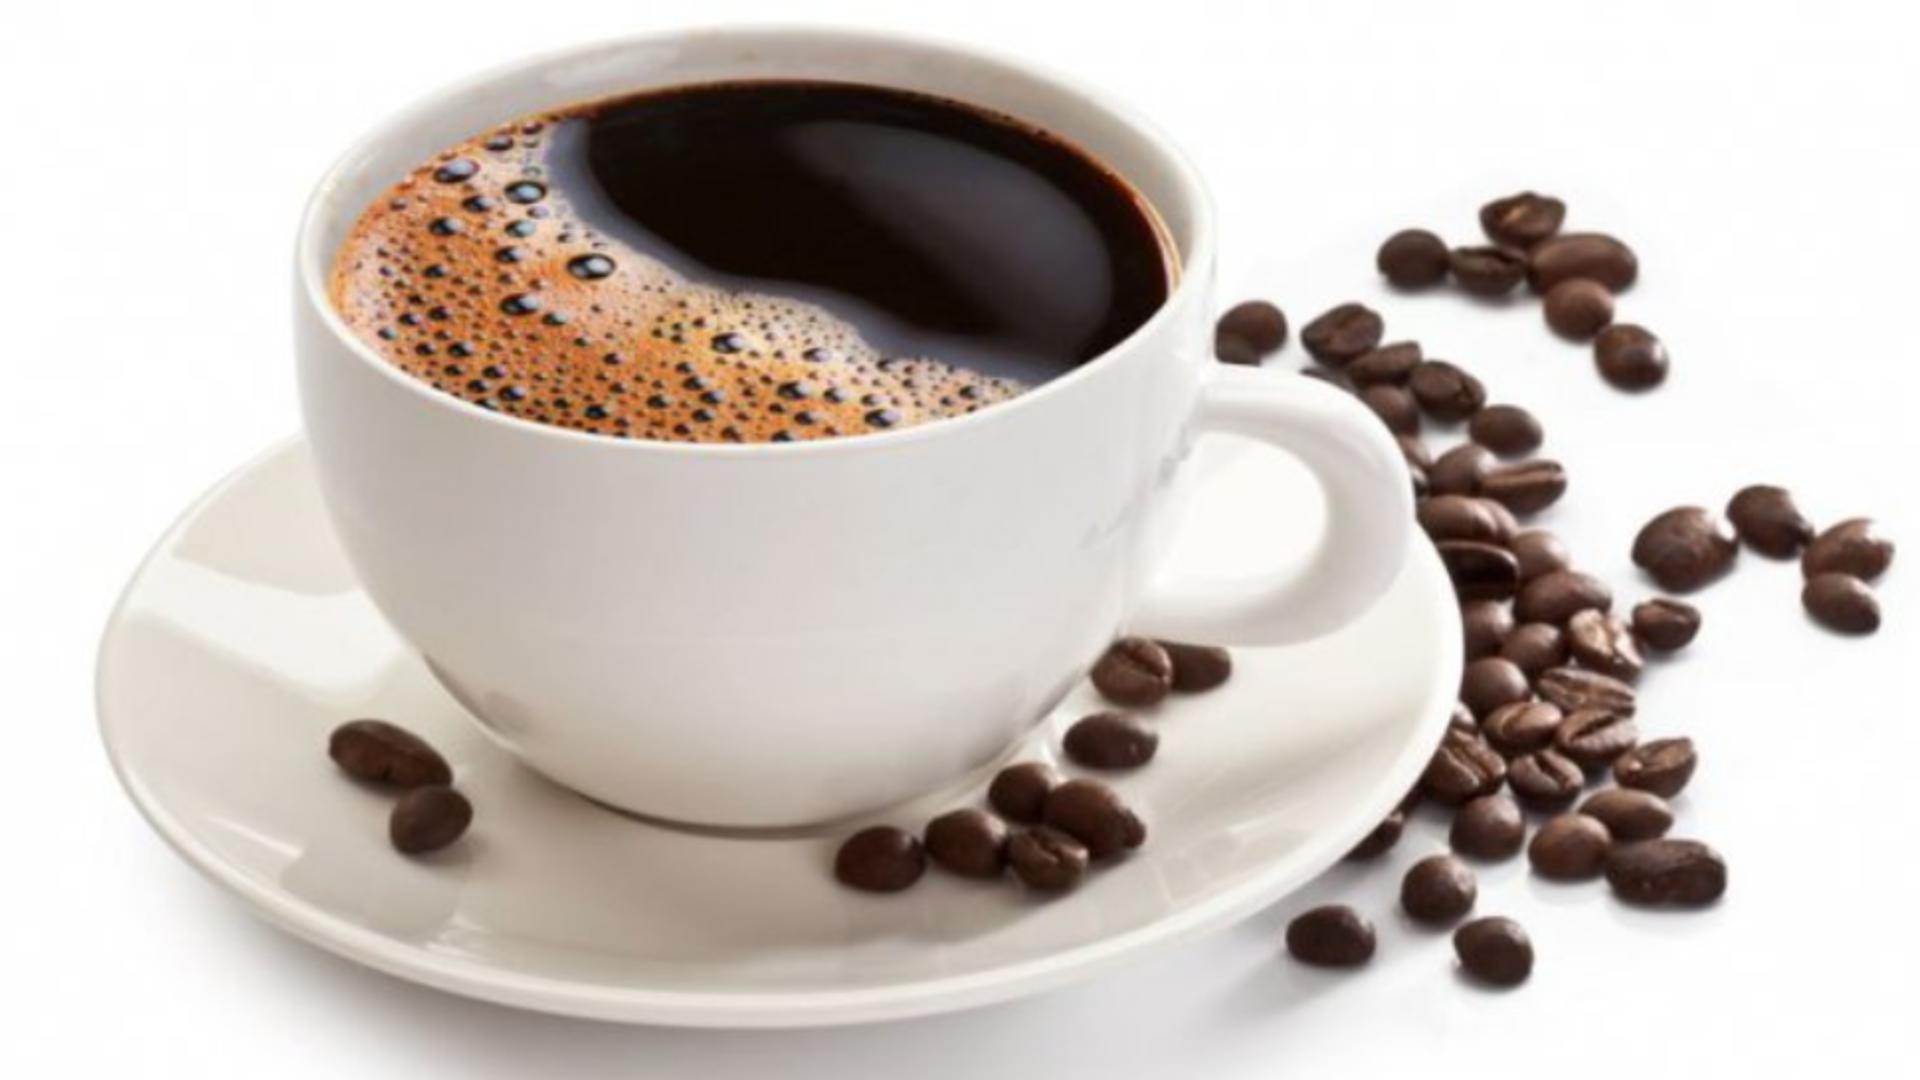 "Cea mai mare idioțenie dimineața este să bei o cafea" - avertisment teribil din partea medicilor